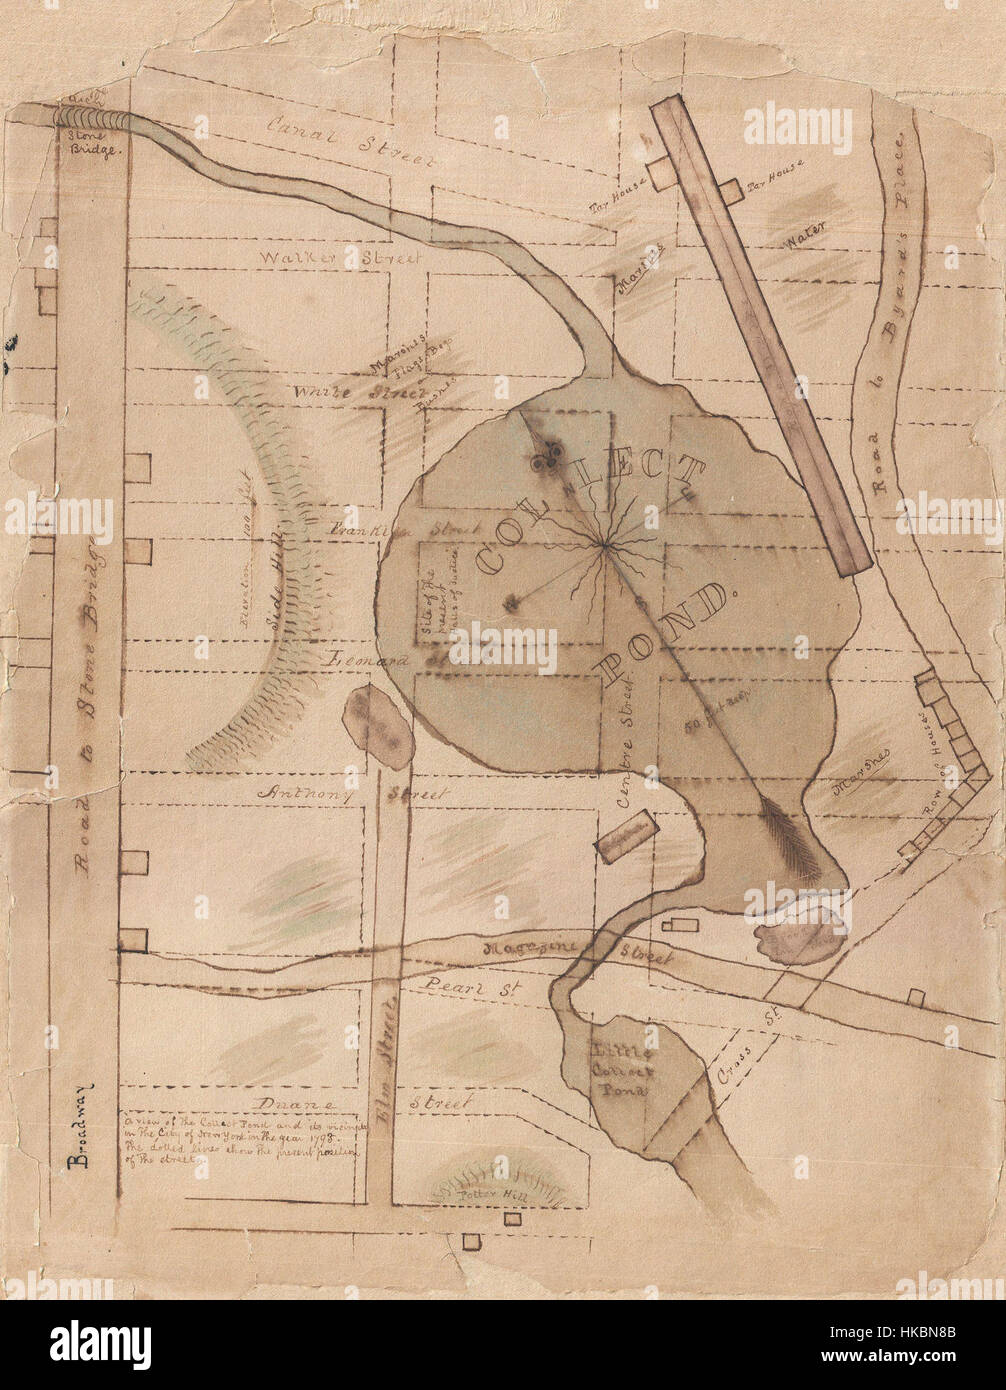 1840-Manuskript-Karte von den Collect Pond und fünf Punkte, New York City Geographicus CollectPond Fivepoints 1793 Stockfoto